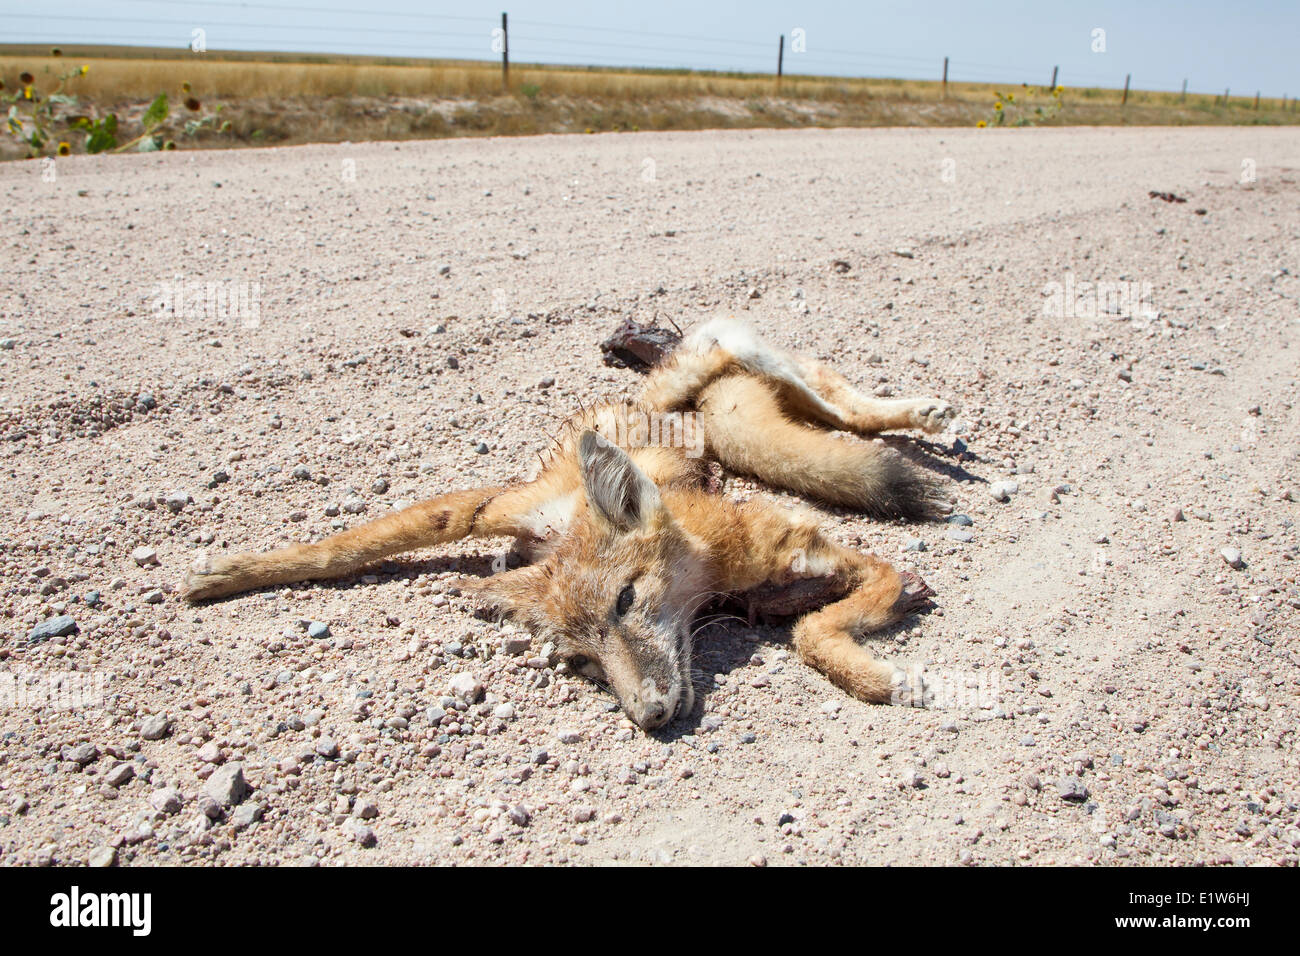 Carretera-mató a swift el zorro kit (Vulpes velox) cerca de un Colorado. Los vehículos son una fuente importante de mortalidad para swift zorros. Esta especie Foto de stock